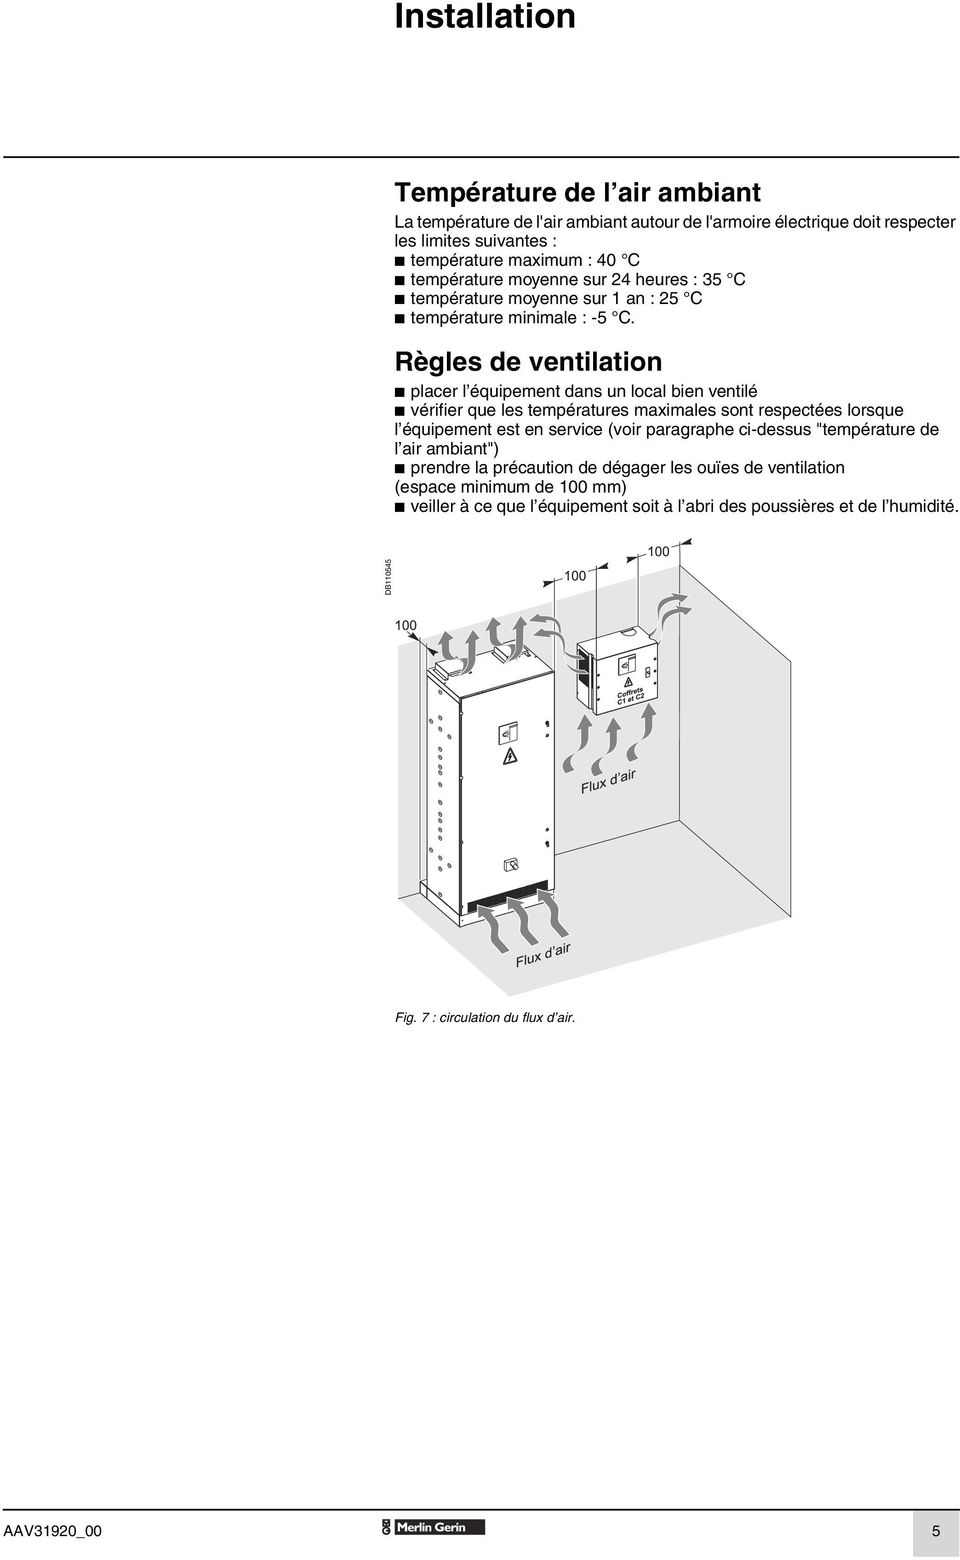 Règles de ventilation b placer l équipement dans un local bien ventilé b vérifier que les températures maximales sont respectées lorsque l équipement est en service (voir paragraphe